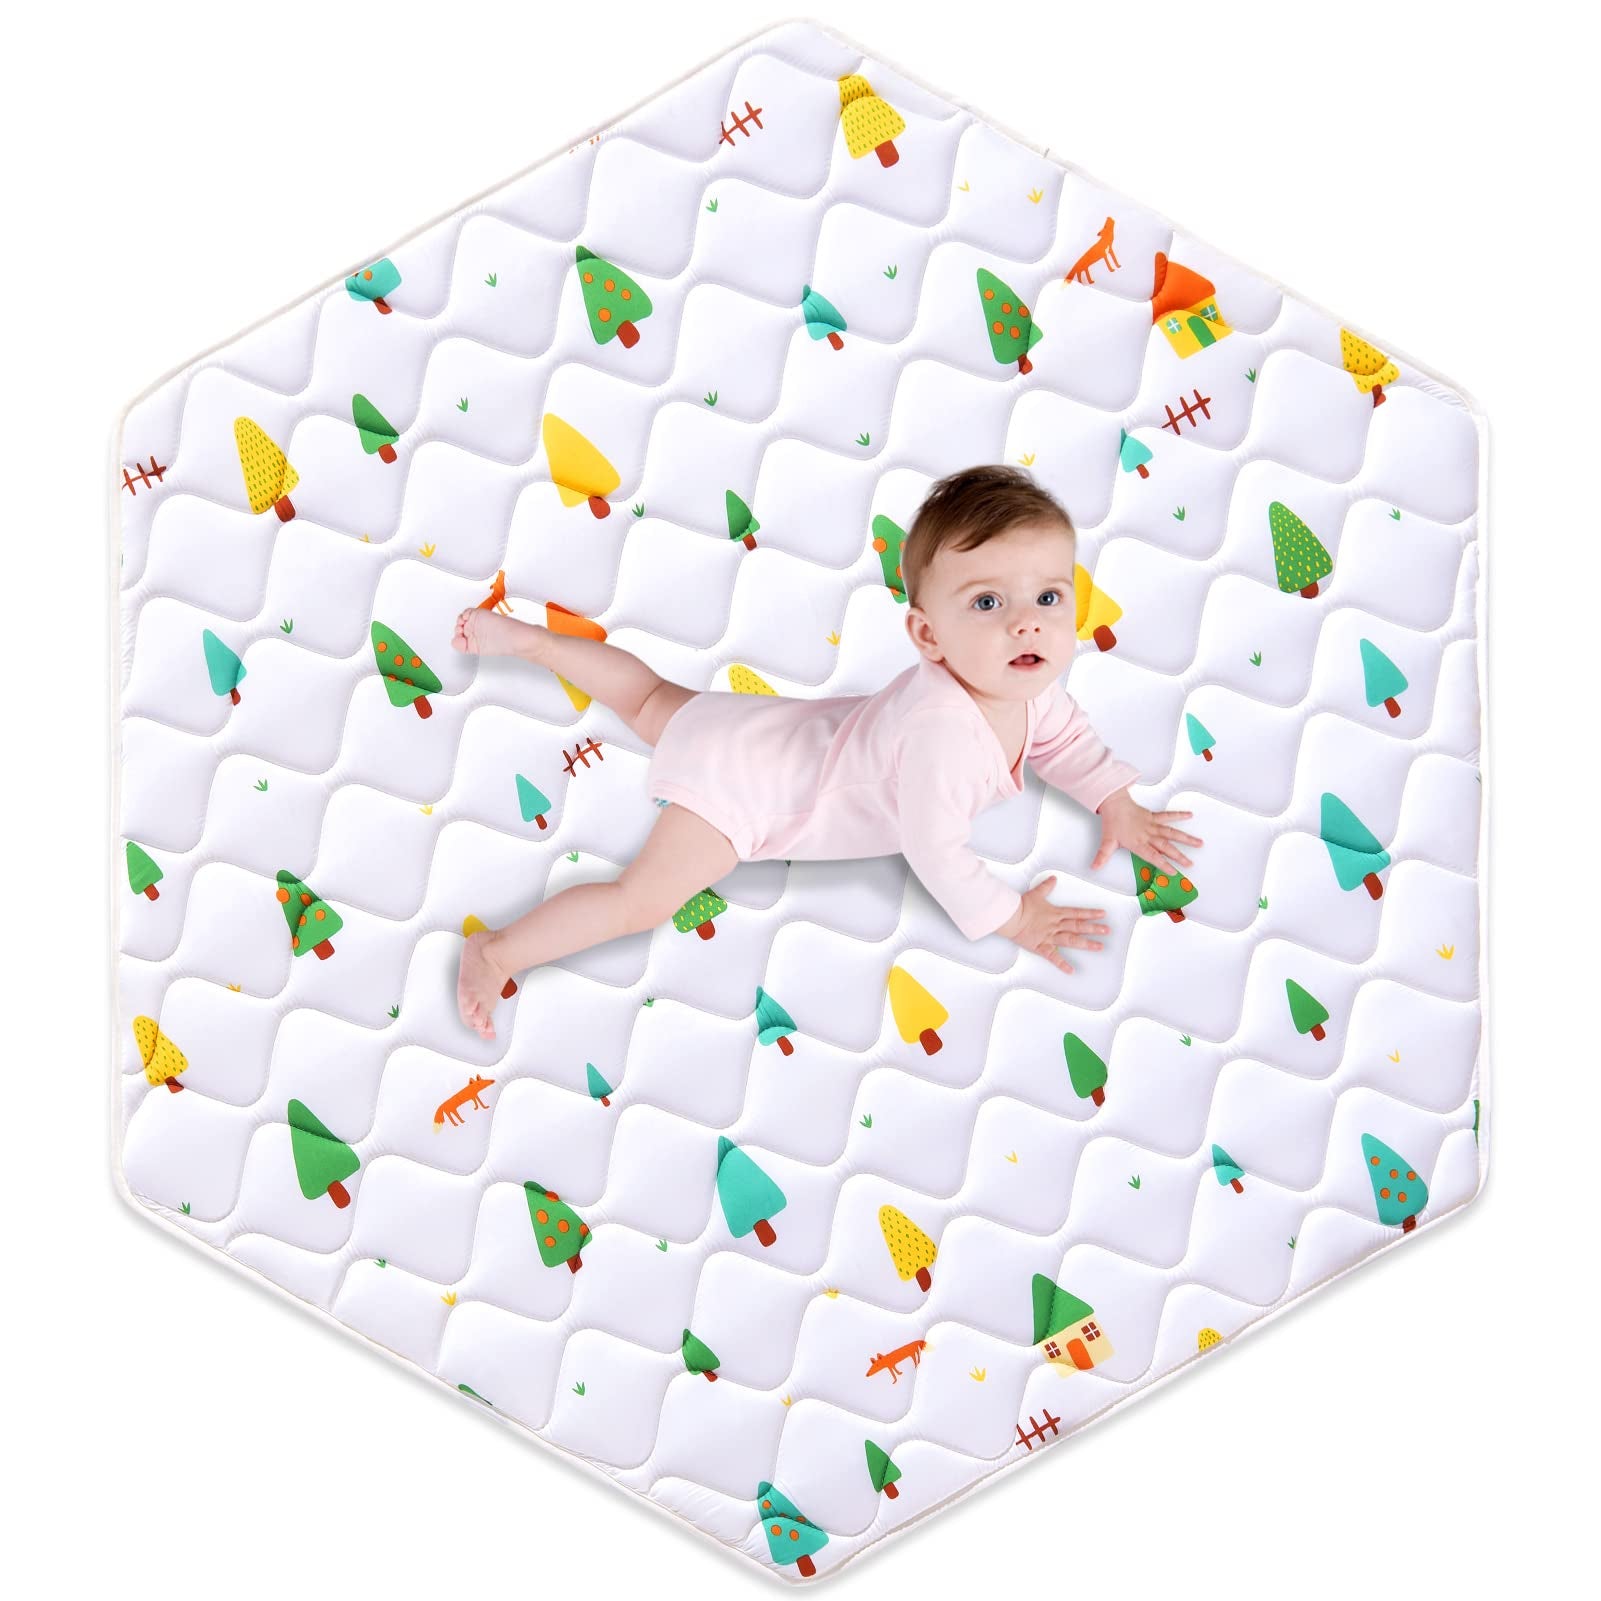 Tapete hexagonal de espuma prémium para bebé, 52 x 45